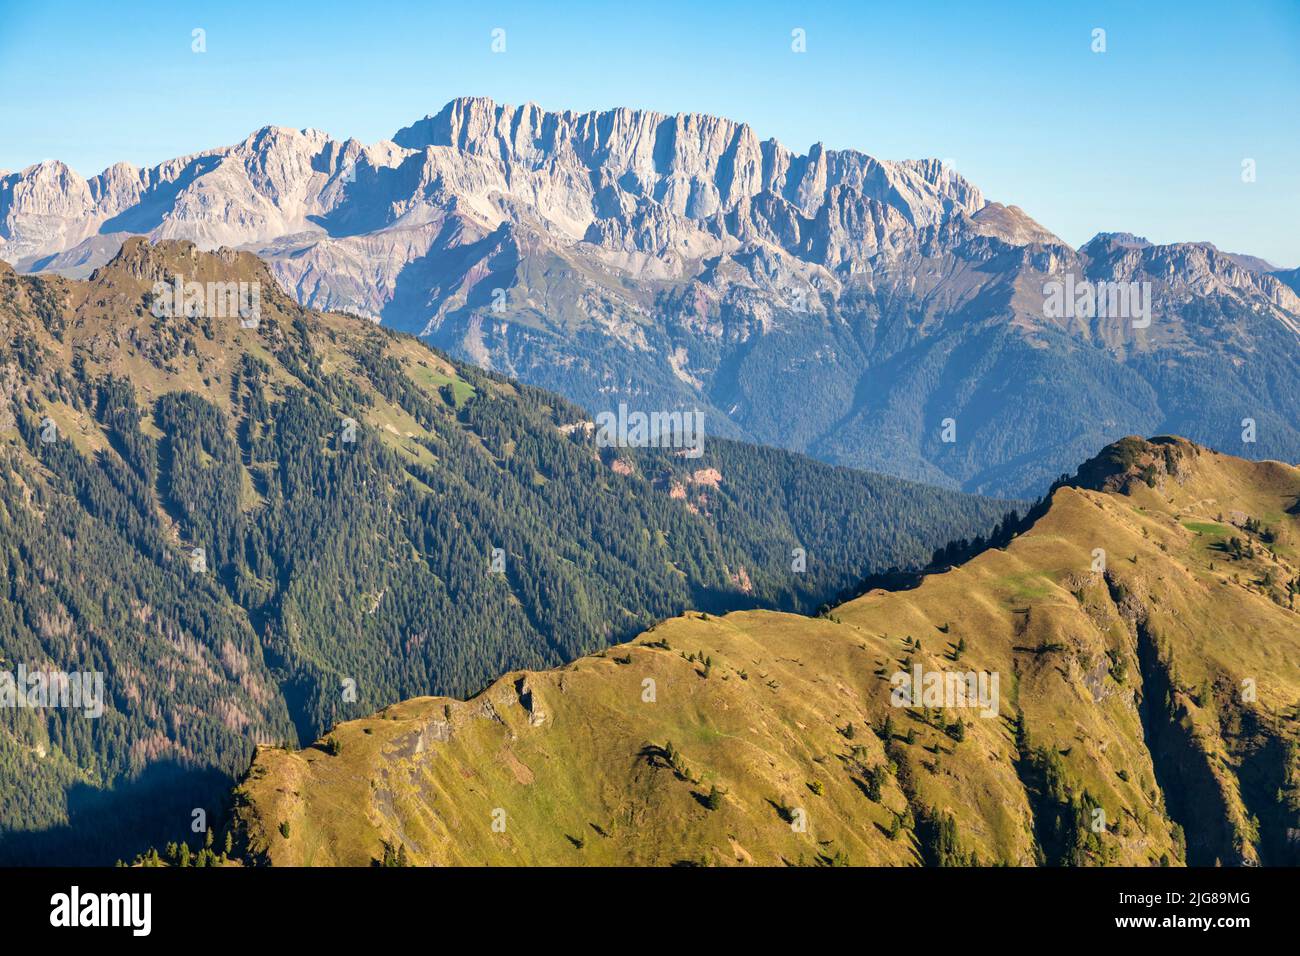 Italia, Veneto, Belluno, Canale d'Agordo, vista por la mañana de la cresta verde de Palalada, al fondo el lado del siuth de Marmolada Foto de stock